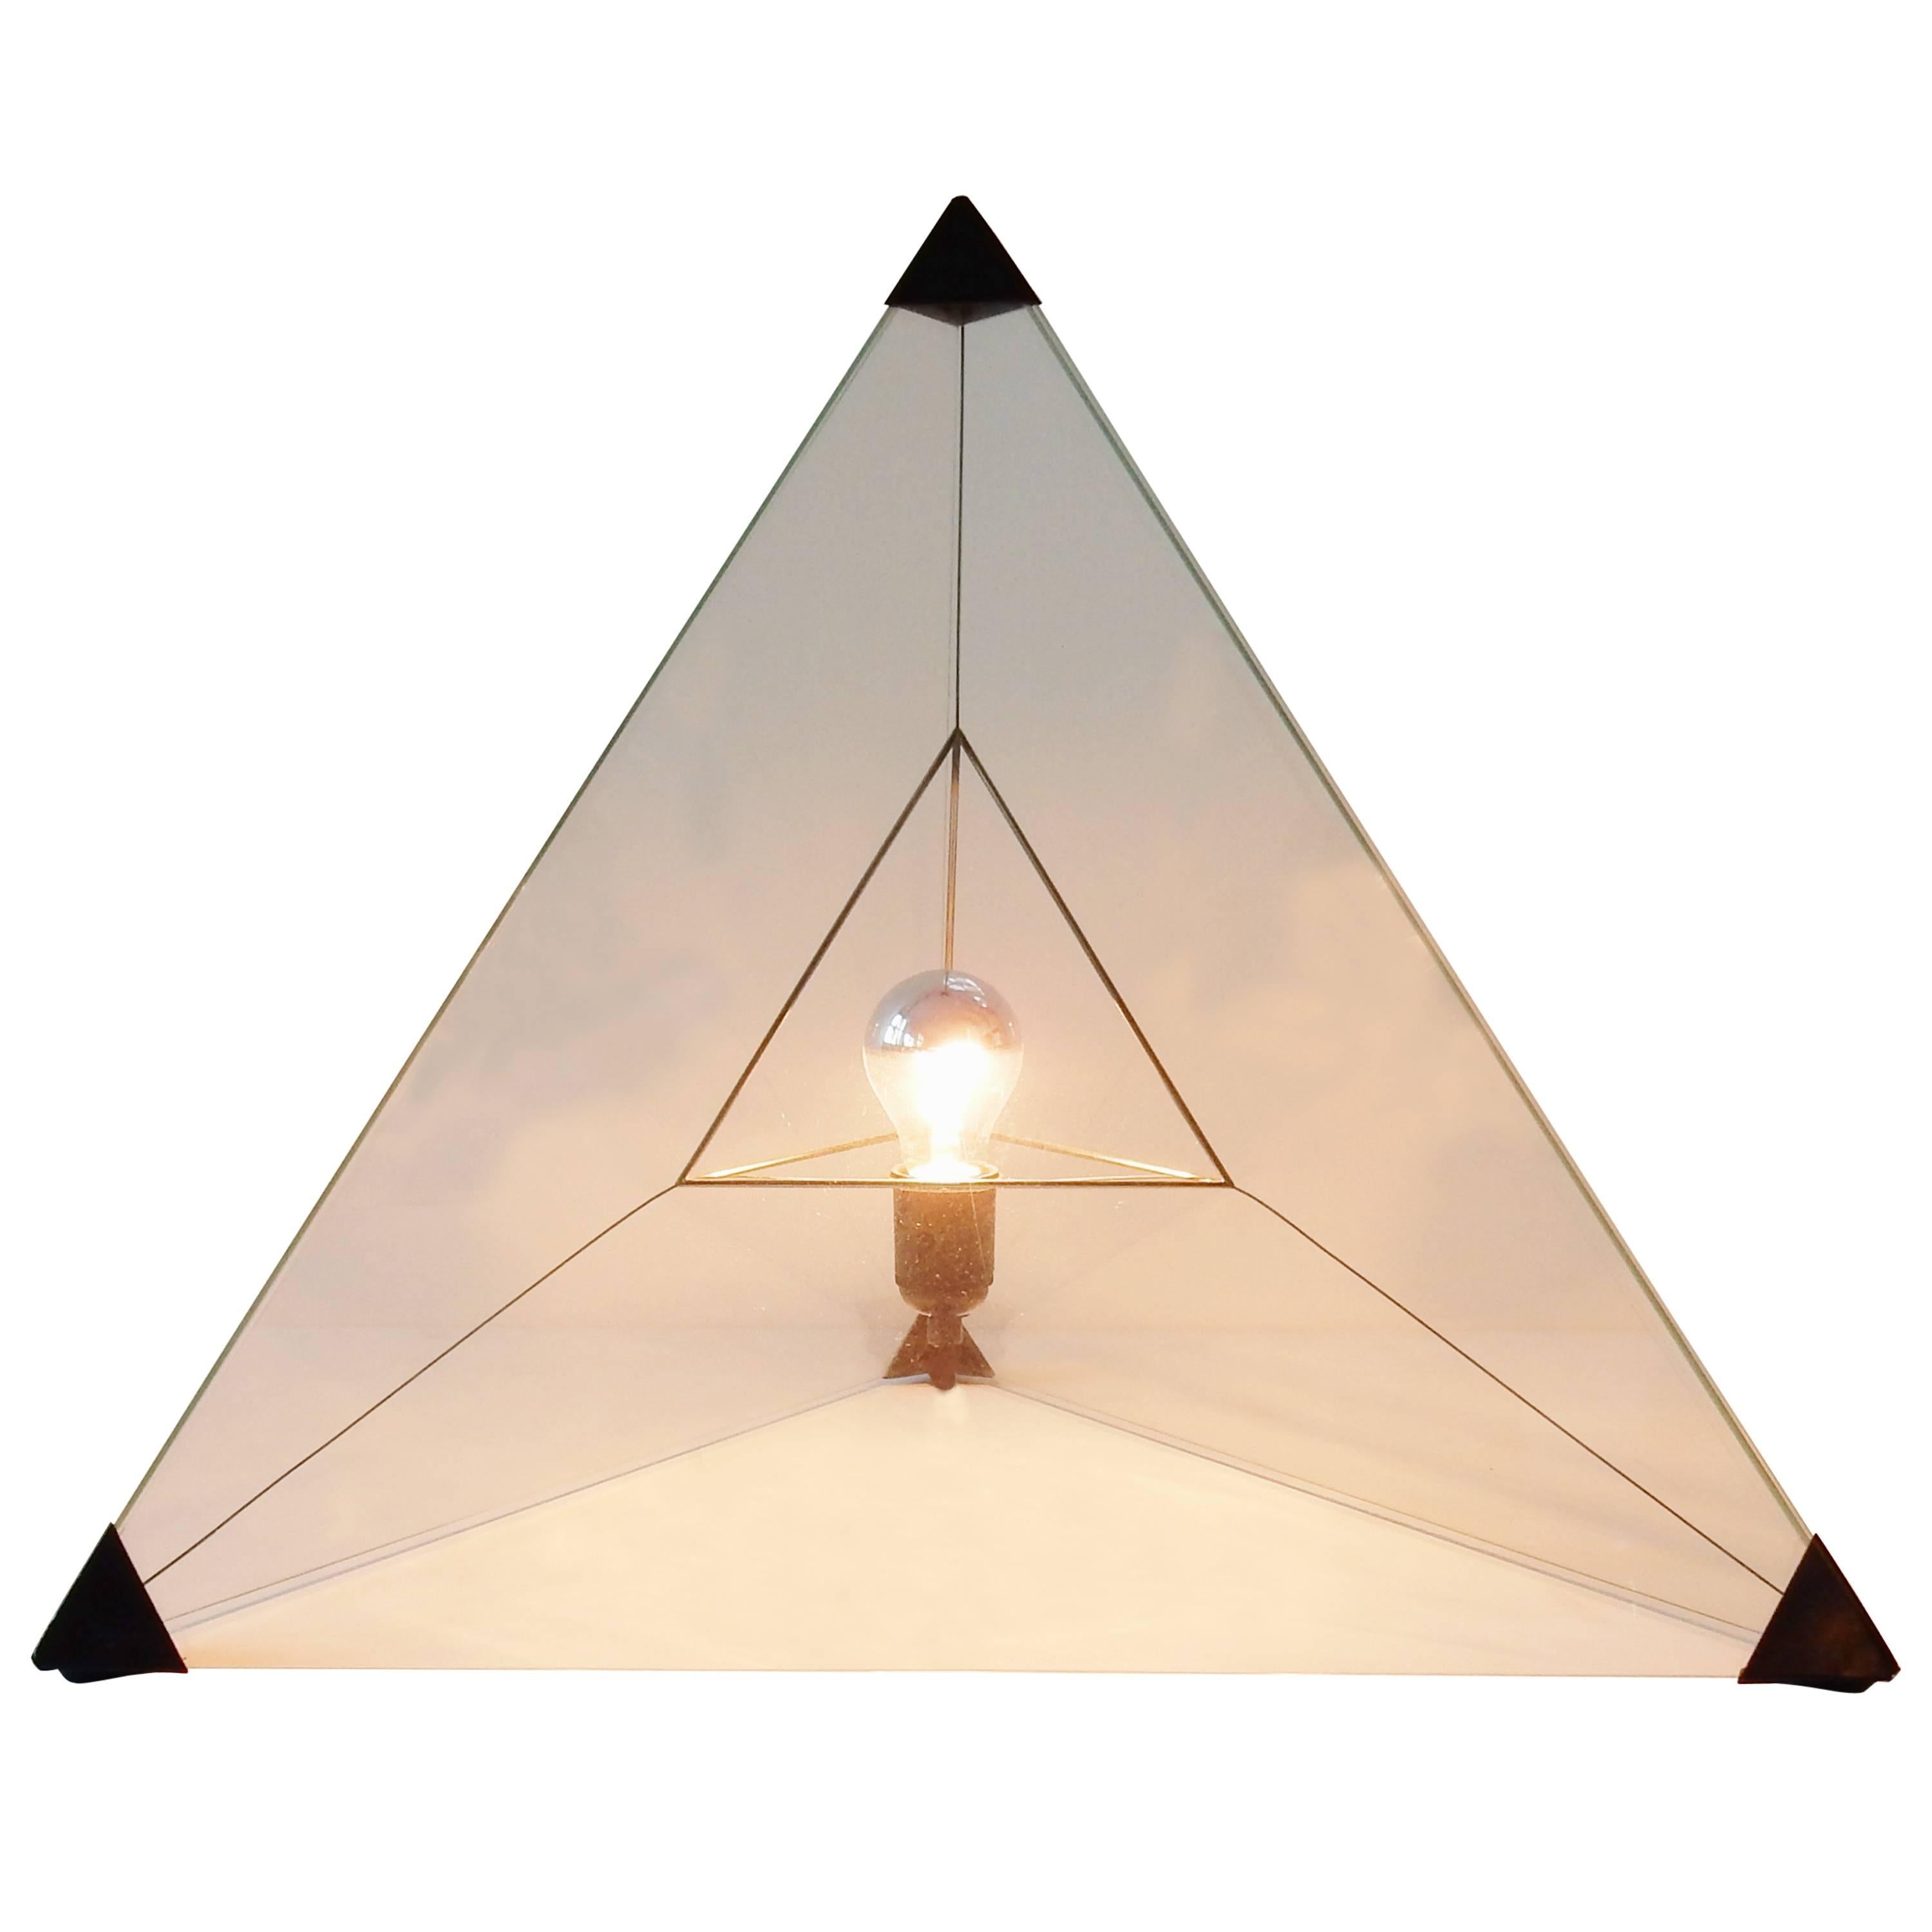 Lampe de table ou lampadaire « Tetrahedron », design néerlandais, années 1970